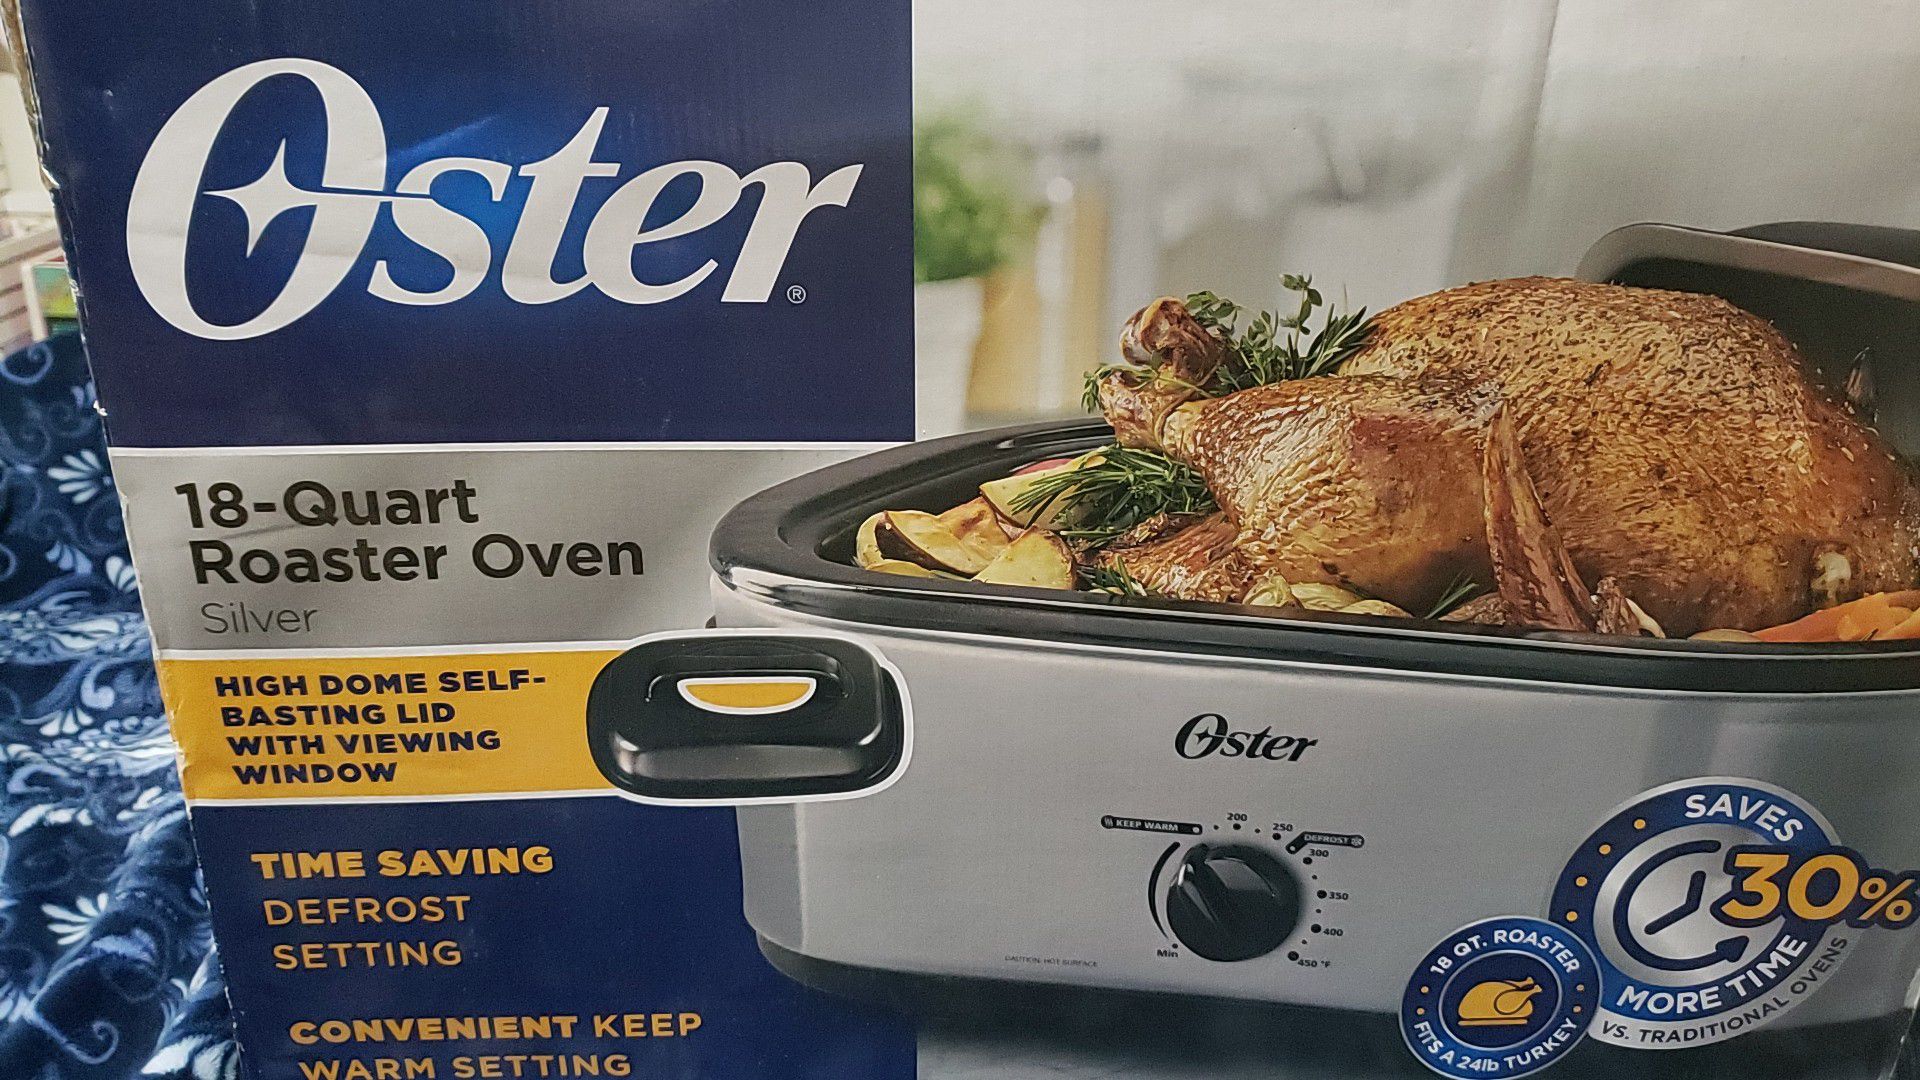 Oster 18 quart roaster oven. $22